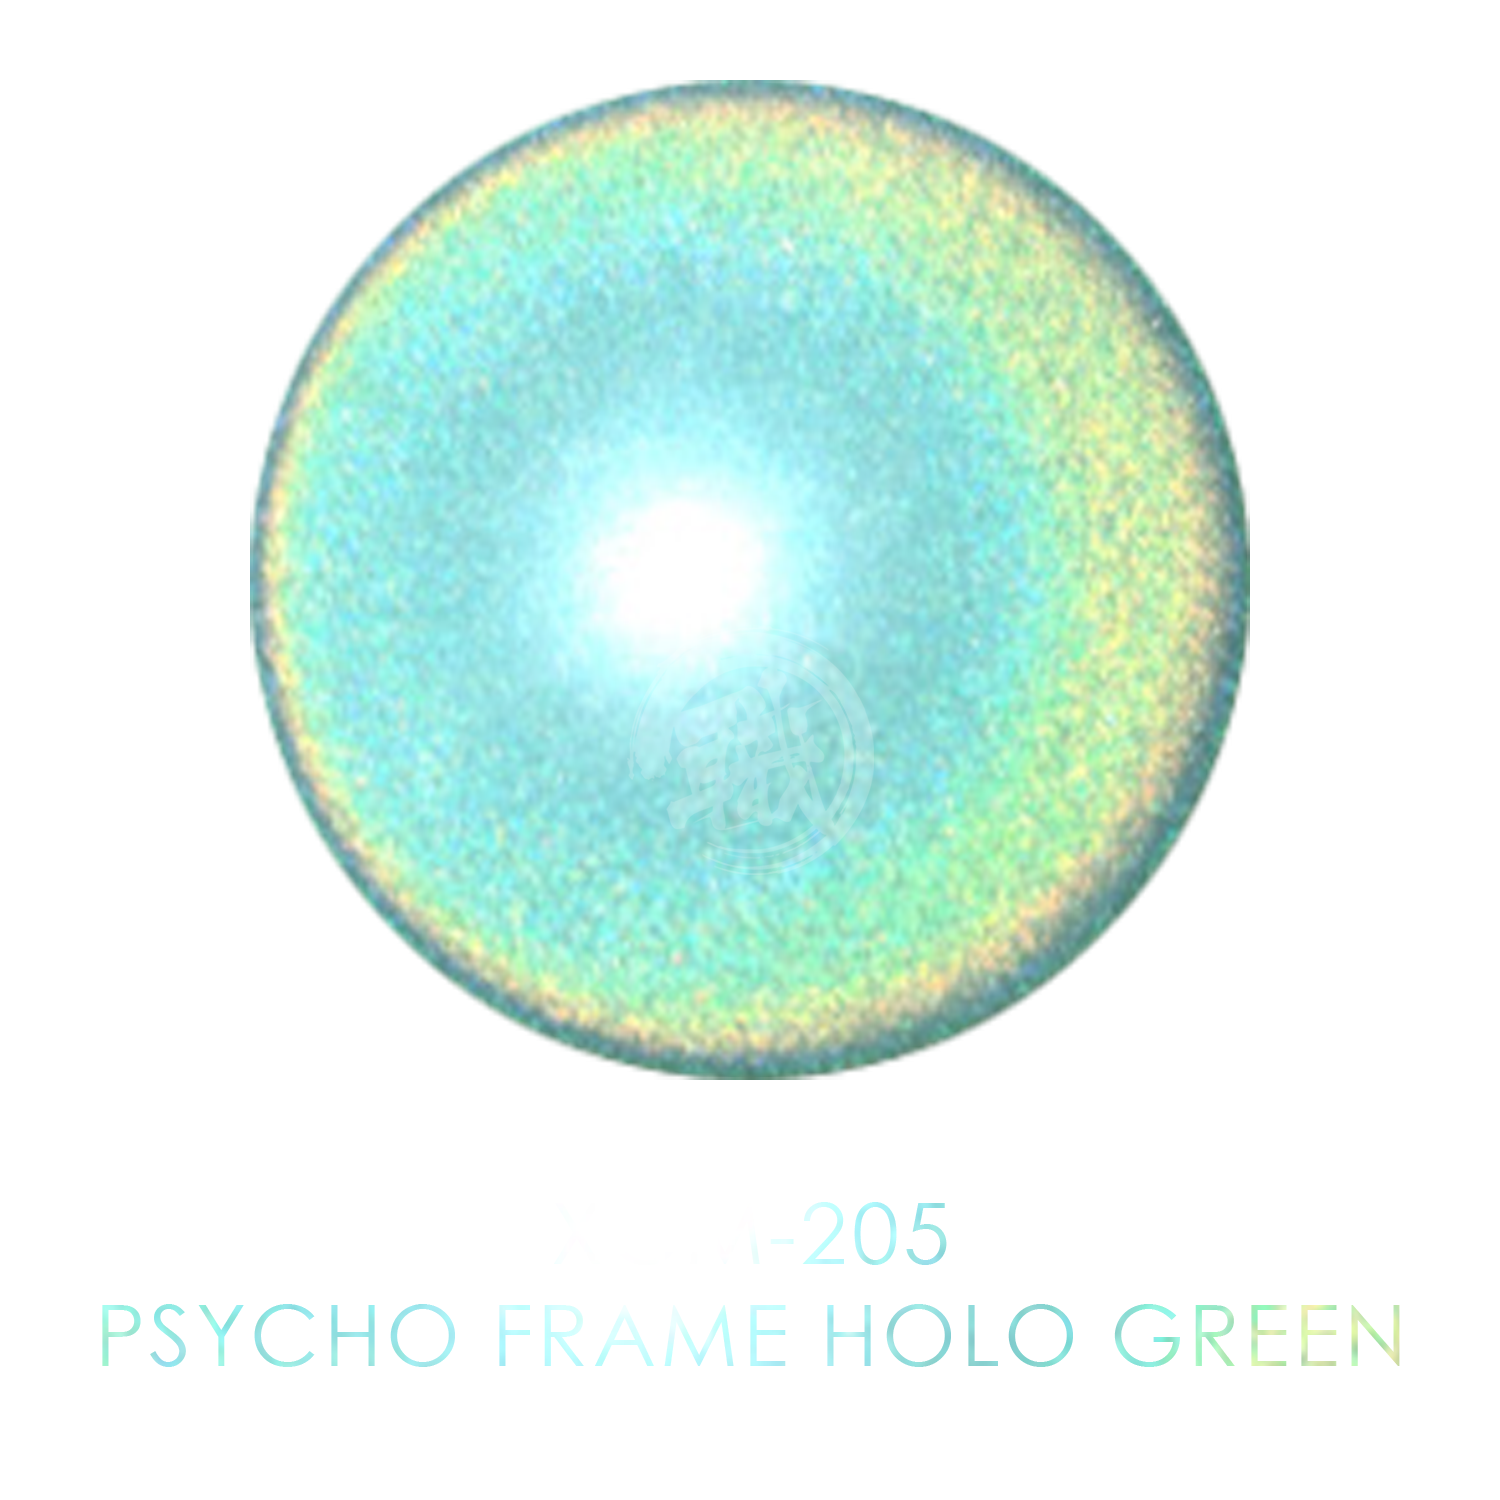 GUNDAM MARKER EX PSYCHO FRAME HOLO GREEN XGM205 - Rise of Gunpla